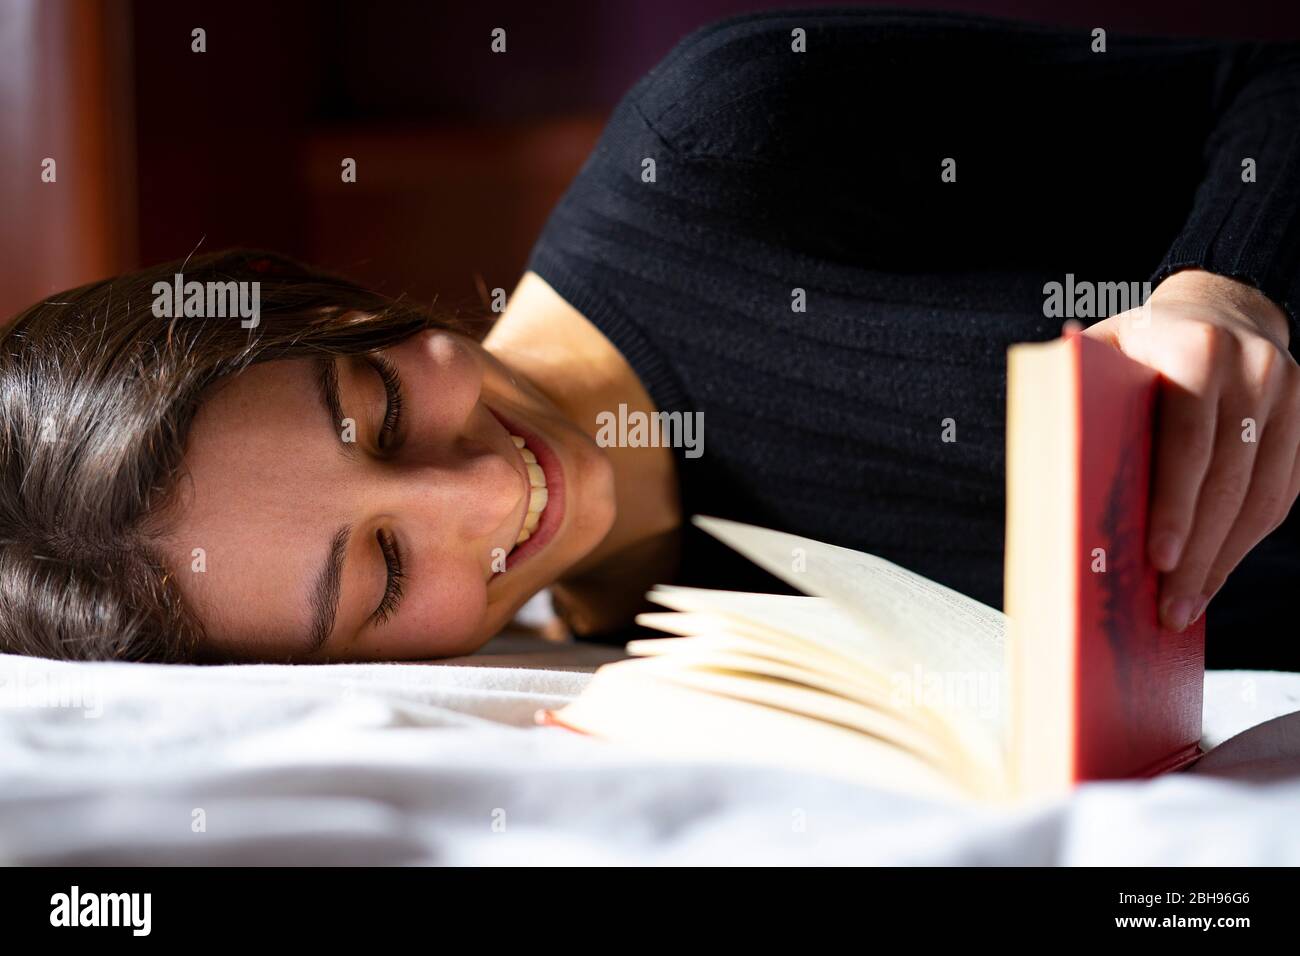 Frau im Bett liegend und ein Buch lesend. Stockfoto